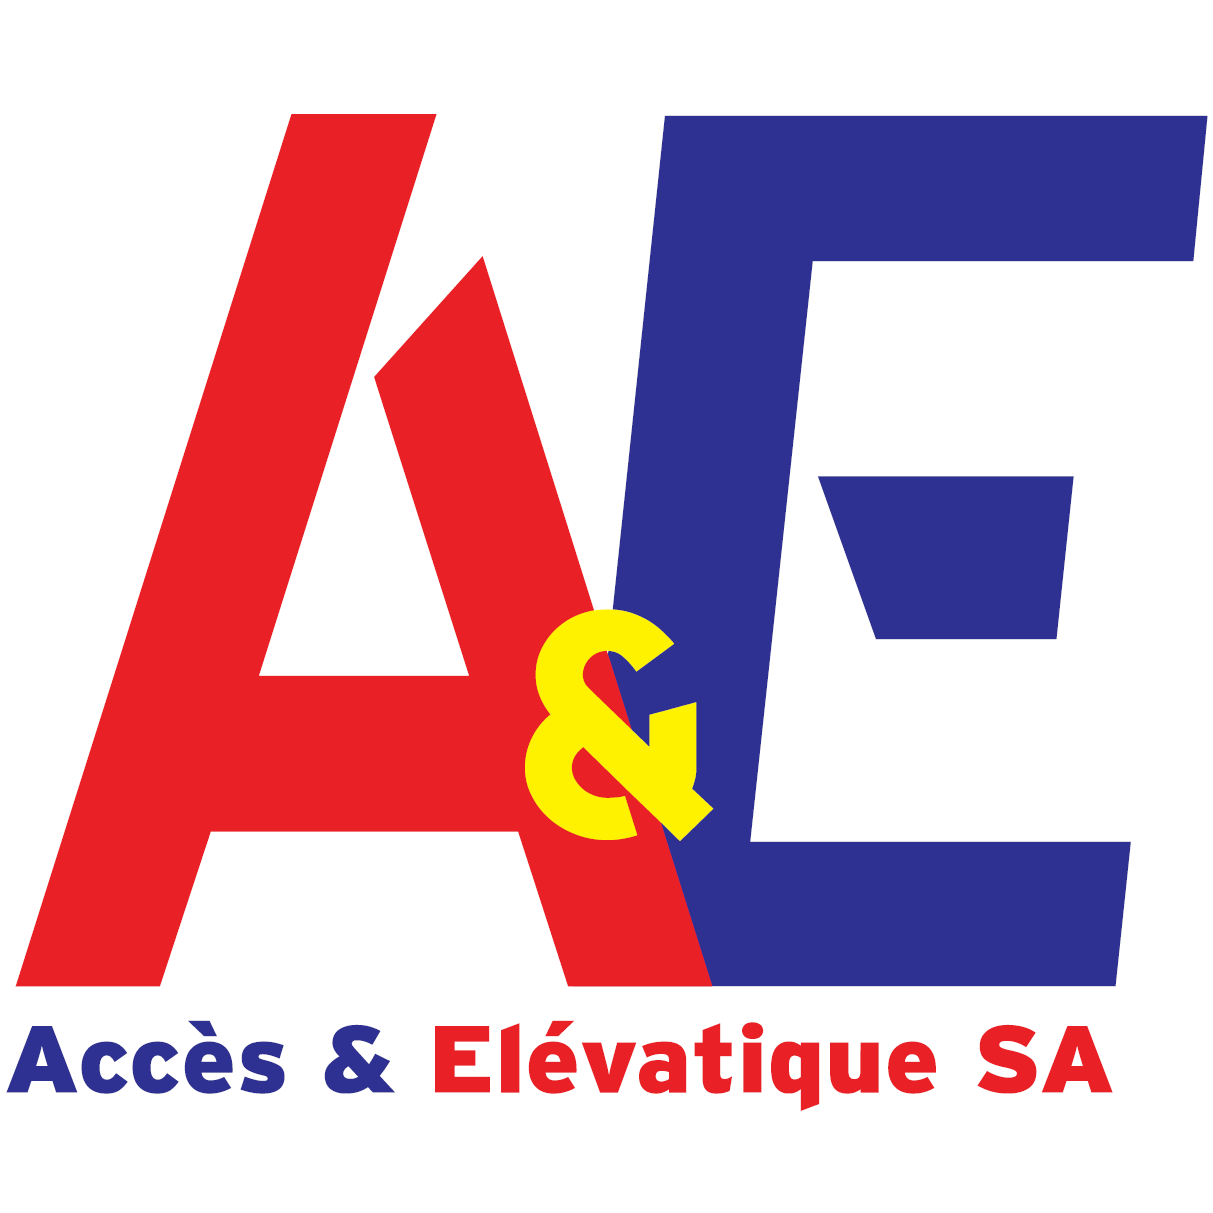 Accès & Elévatique SA Logo